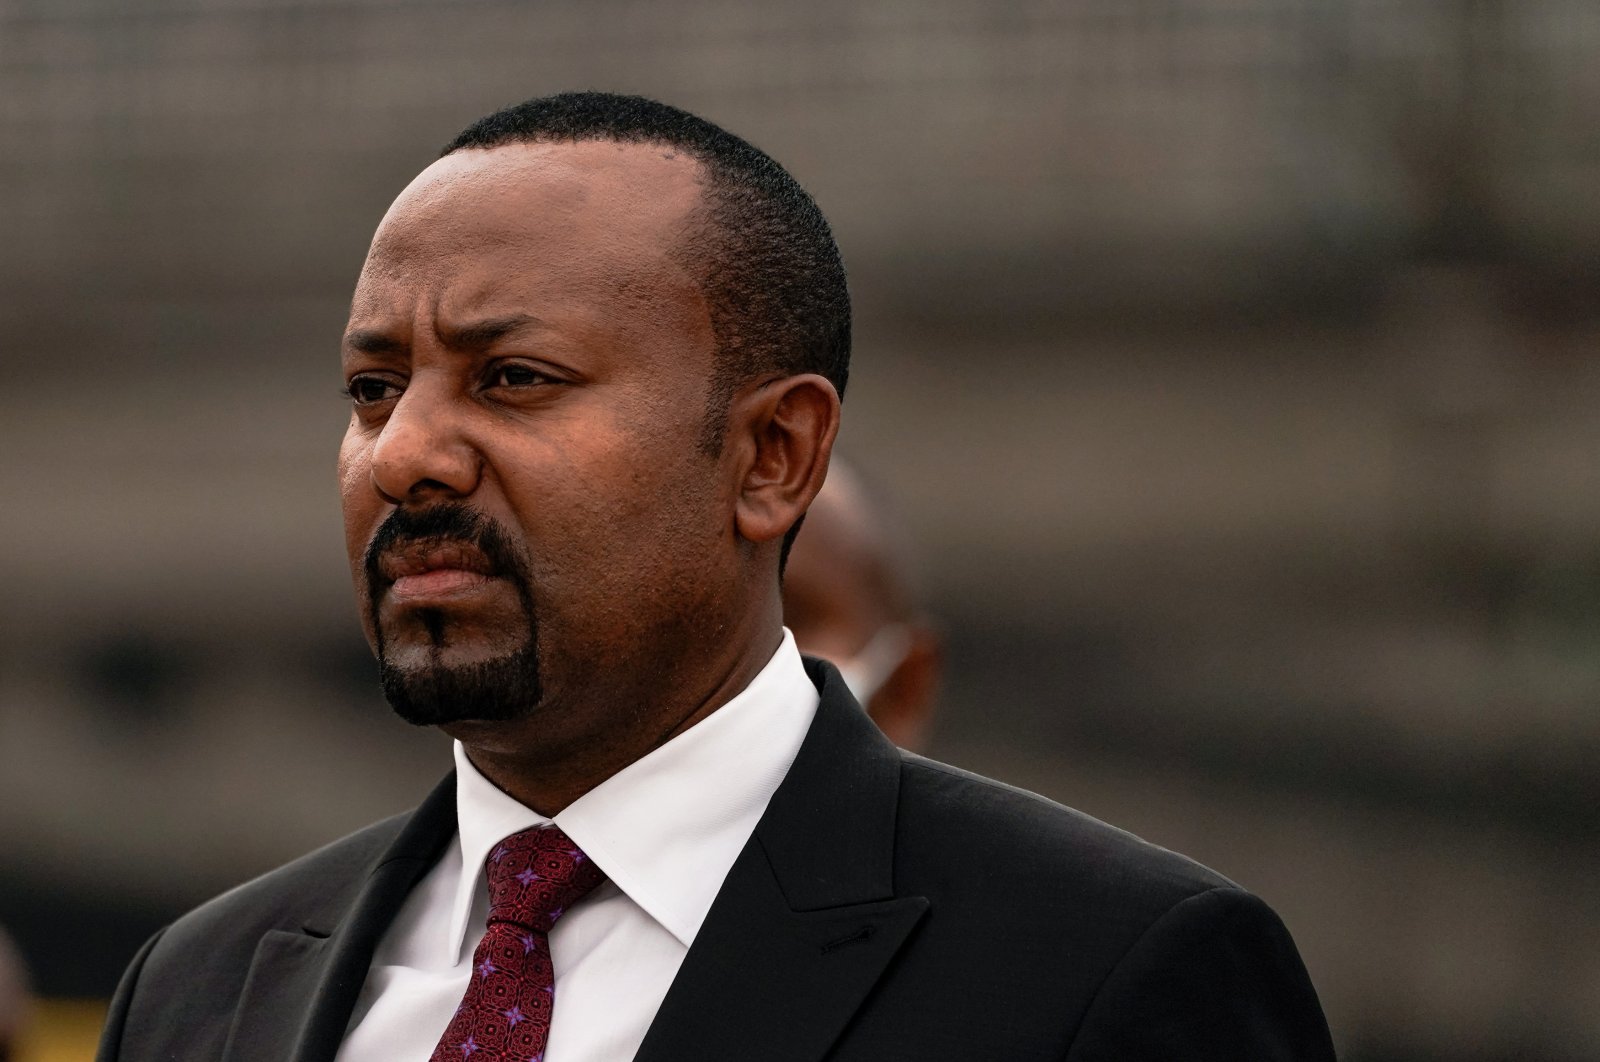 PM Ethiopia Abiy telah pergi ke garis depan perang: Media pemerintah